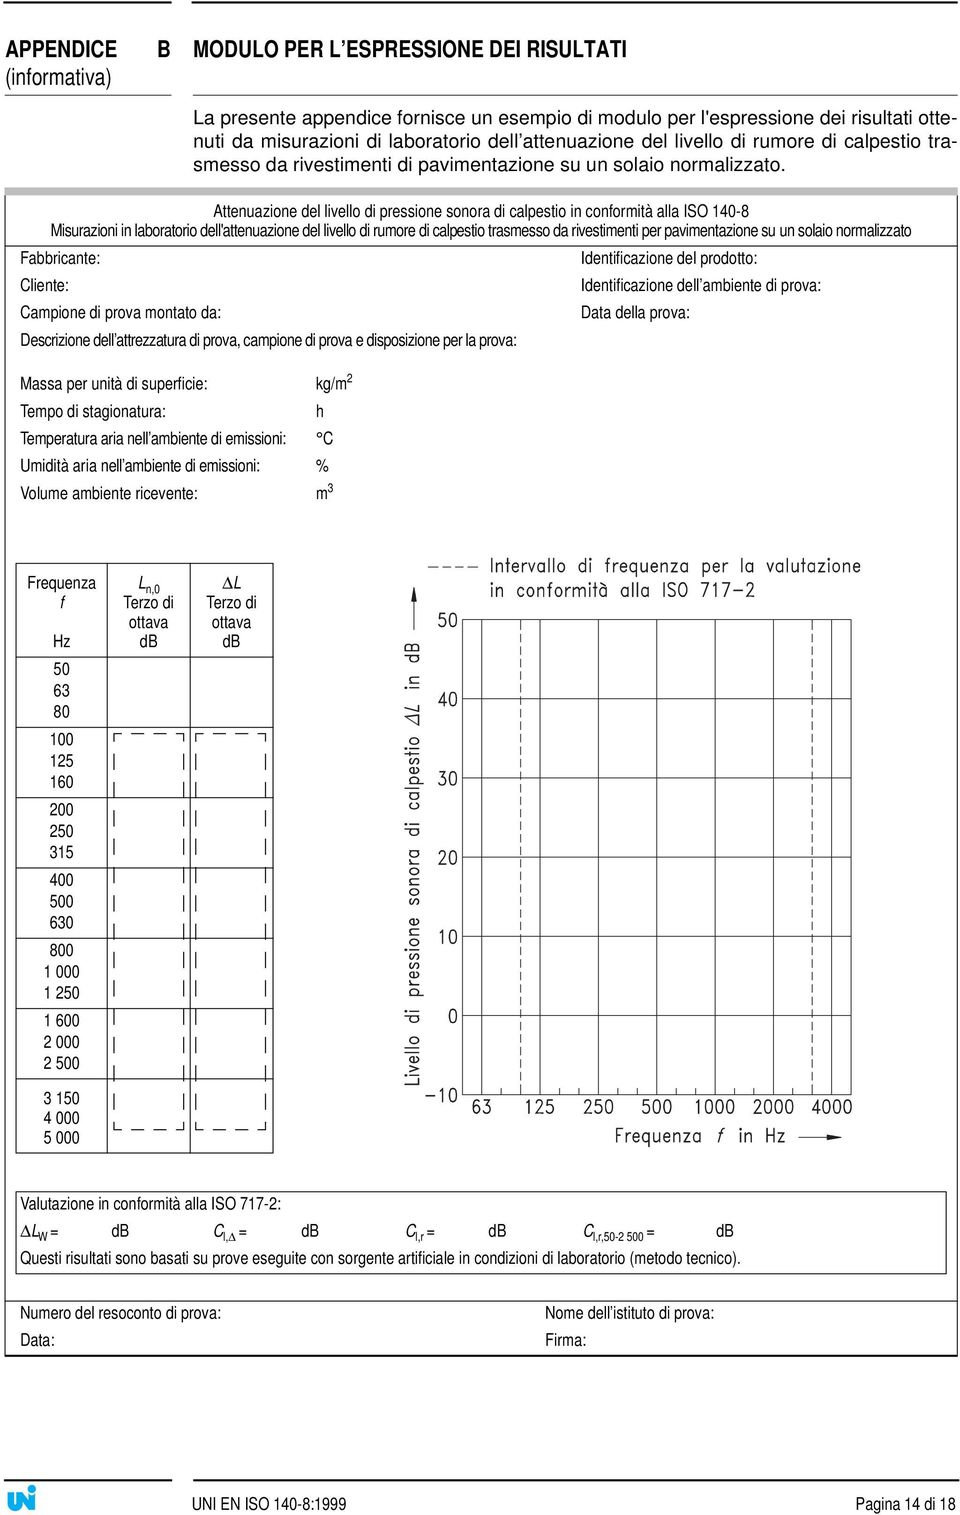 Attenuazione del livello di pressione sonora di calpestio in conformità alla ISO 140-8 Misurazioni in laboratorio dell'attenuazione del livello di rumore di calpestio trasmesso da rivestimenti per